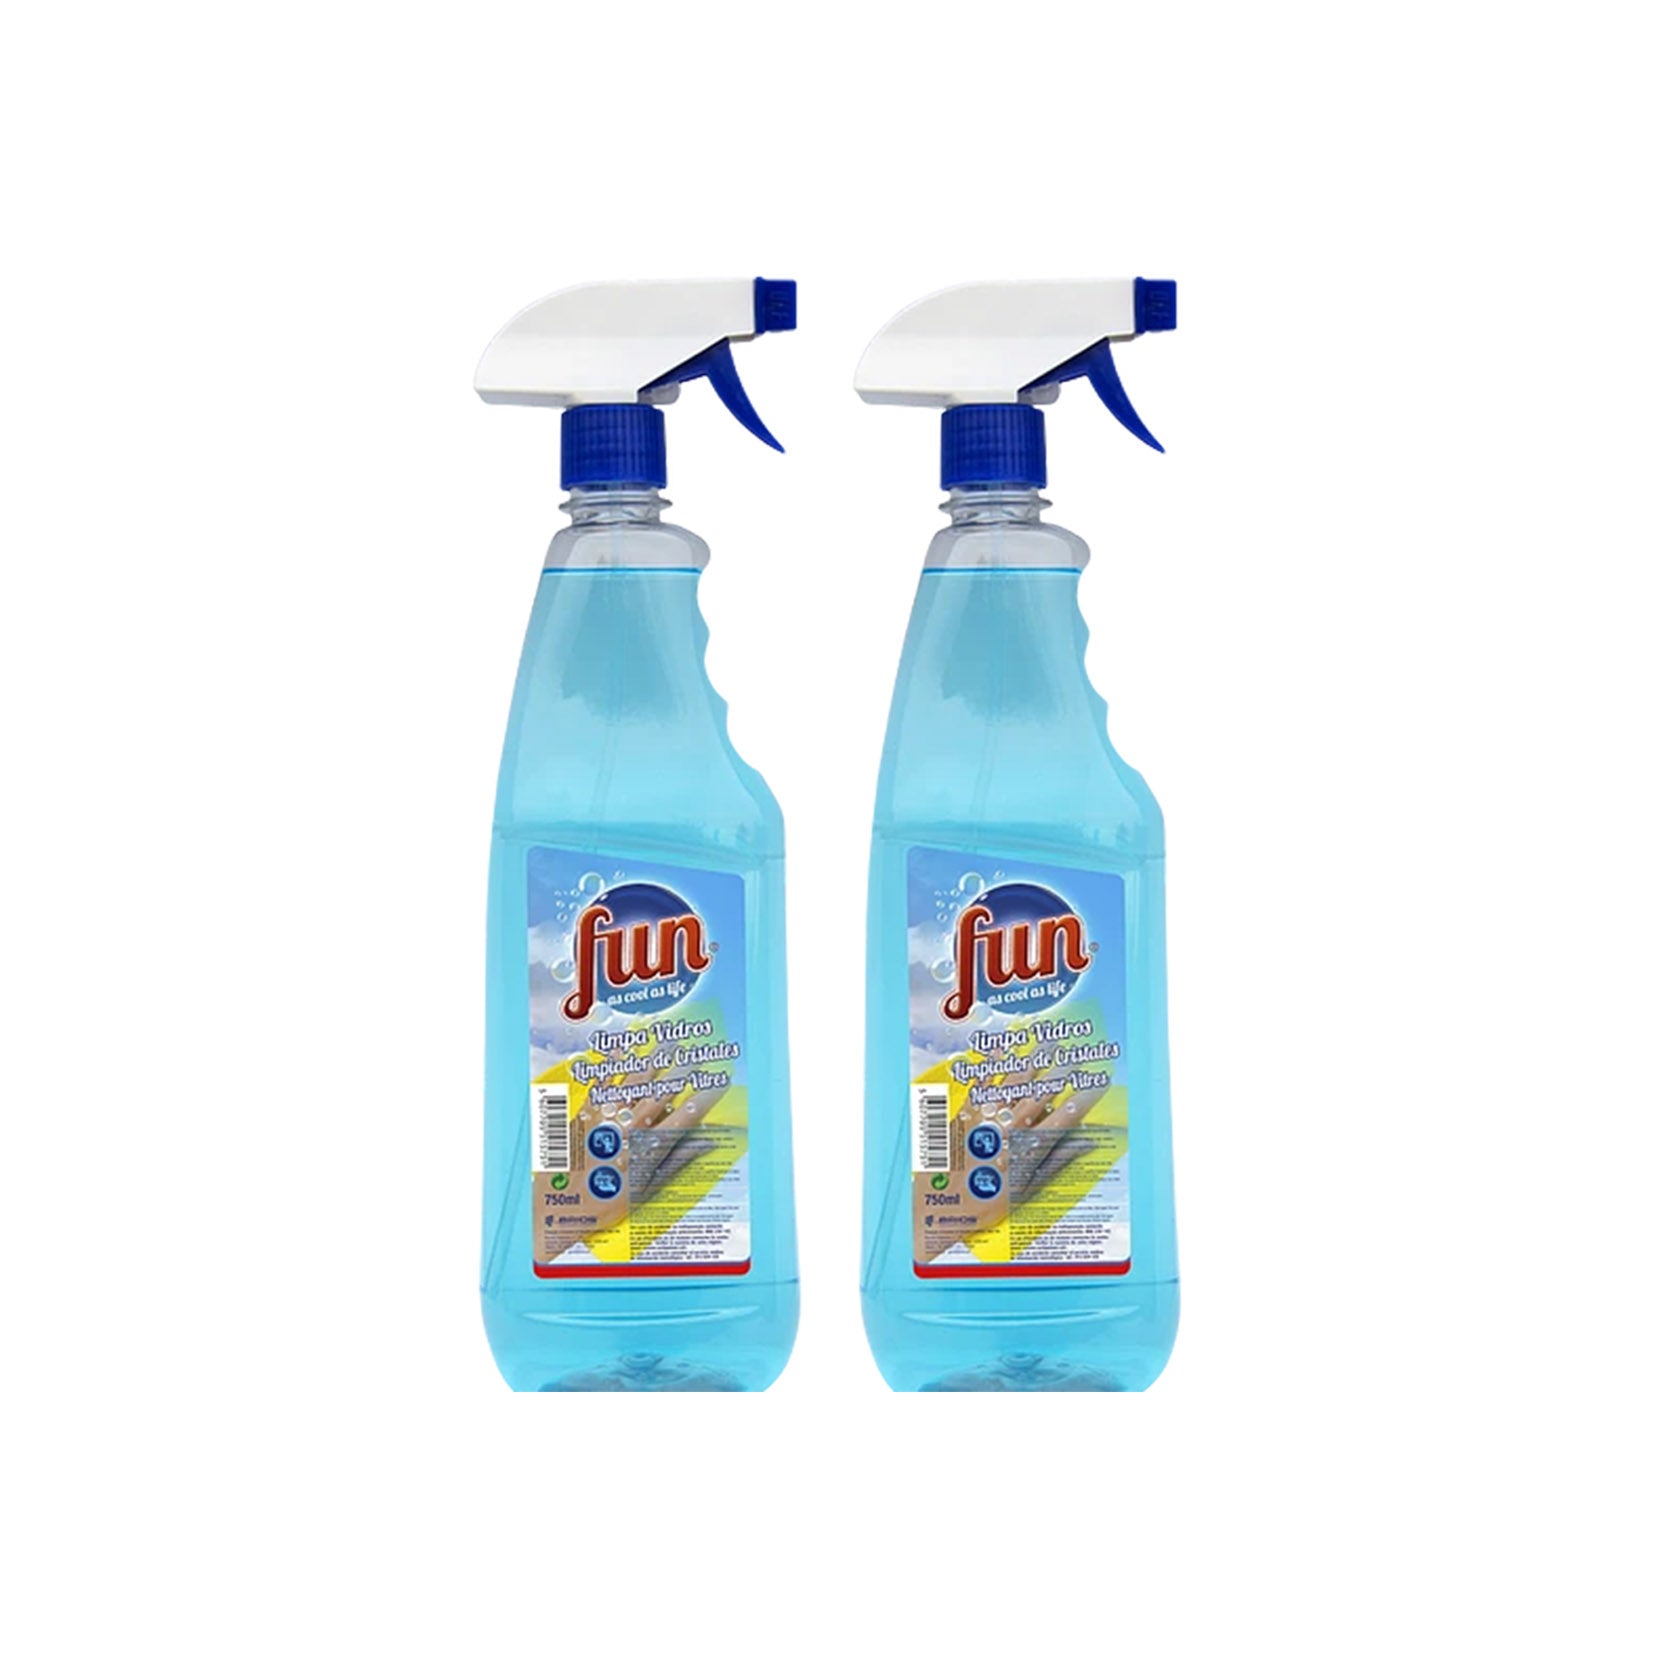 Fun Limpa-Vidros Spray 750 ml - Pack 2 x 750 ml